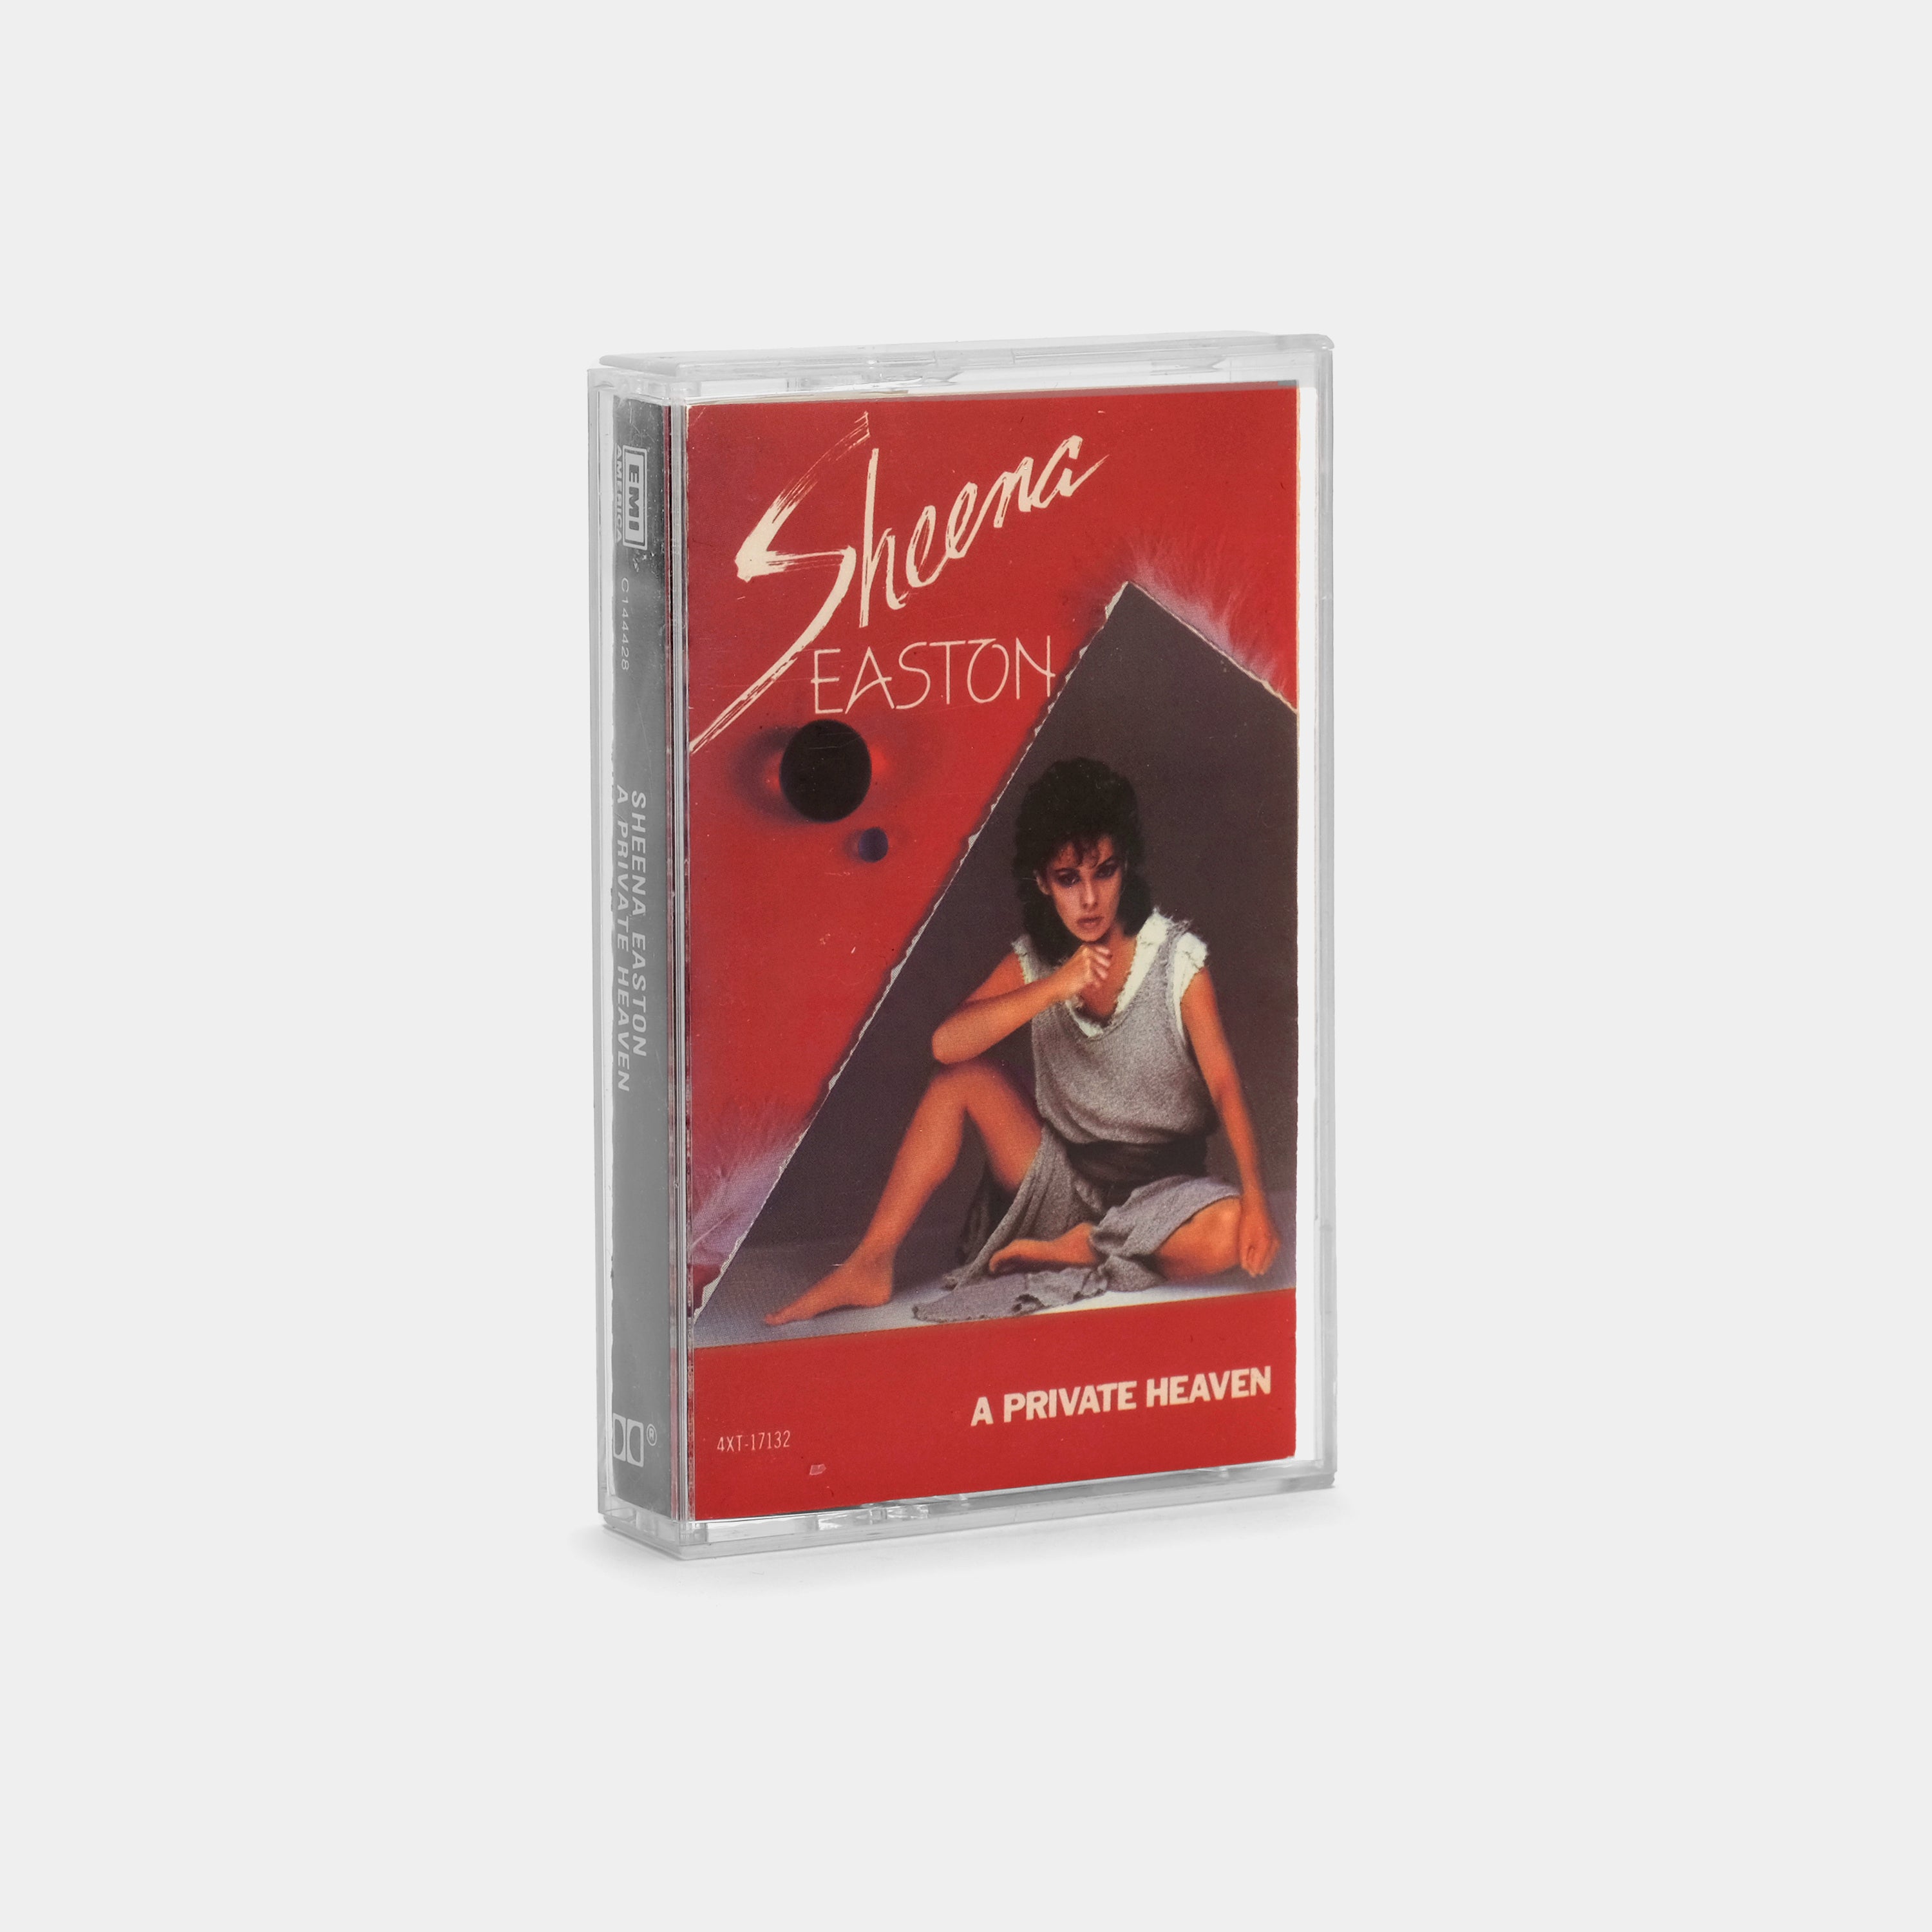 Sheena Easton - A Private Heaven Cassette Tape